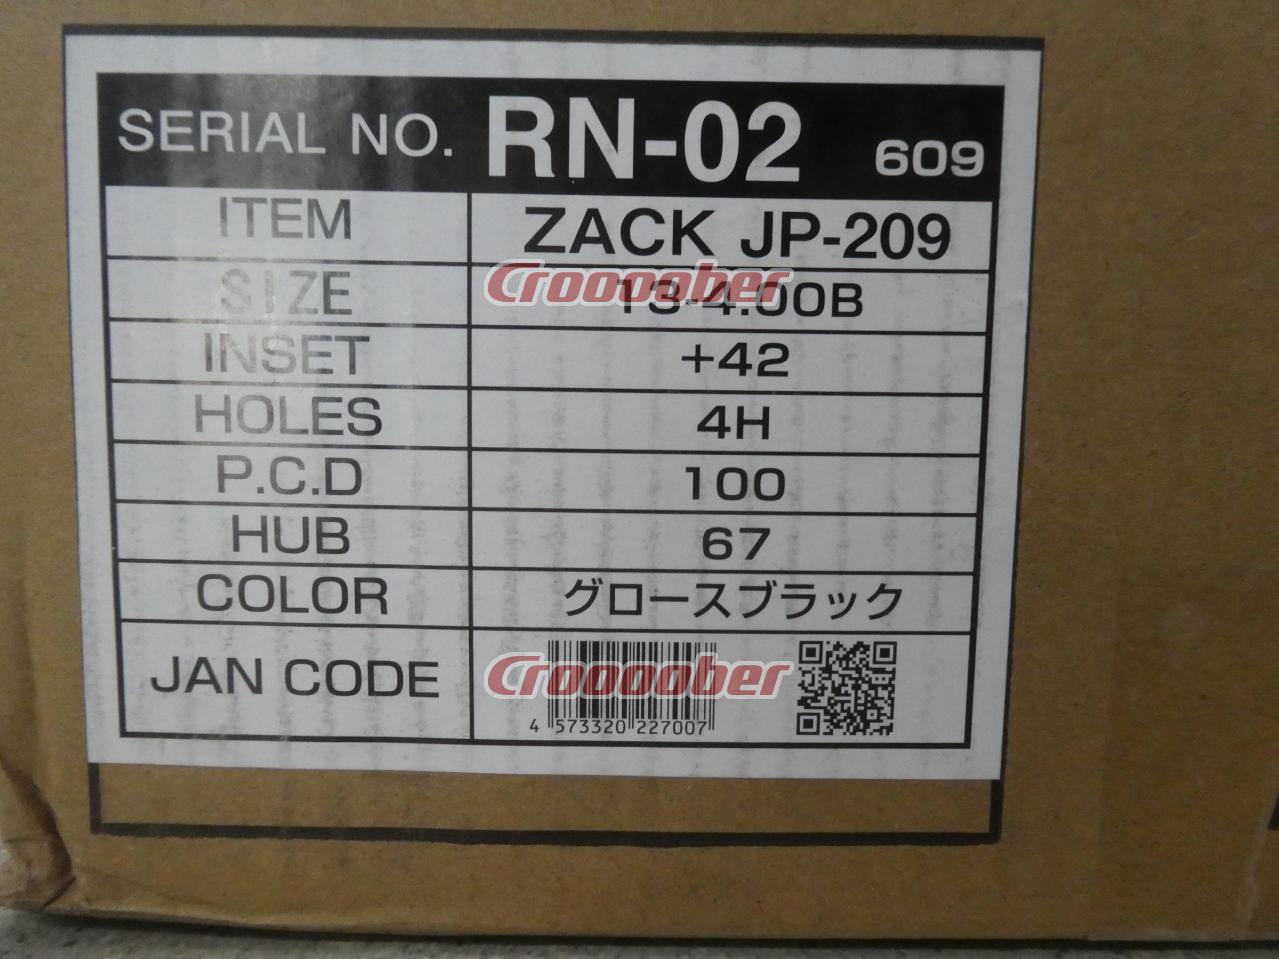 新品[JAPAN SANYO ZACK JP-209 4Jx13+42 100-4H 新品 4本セット 